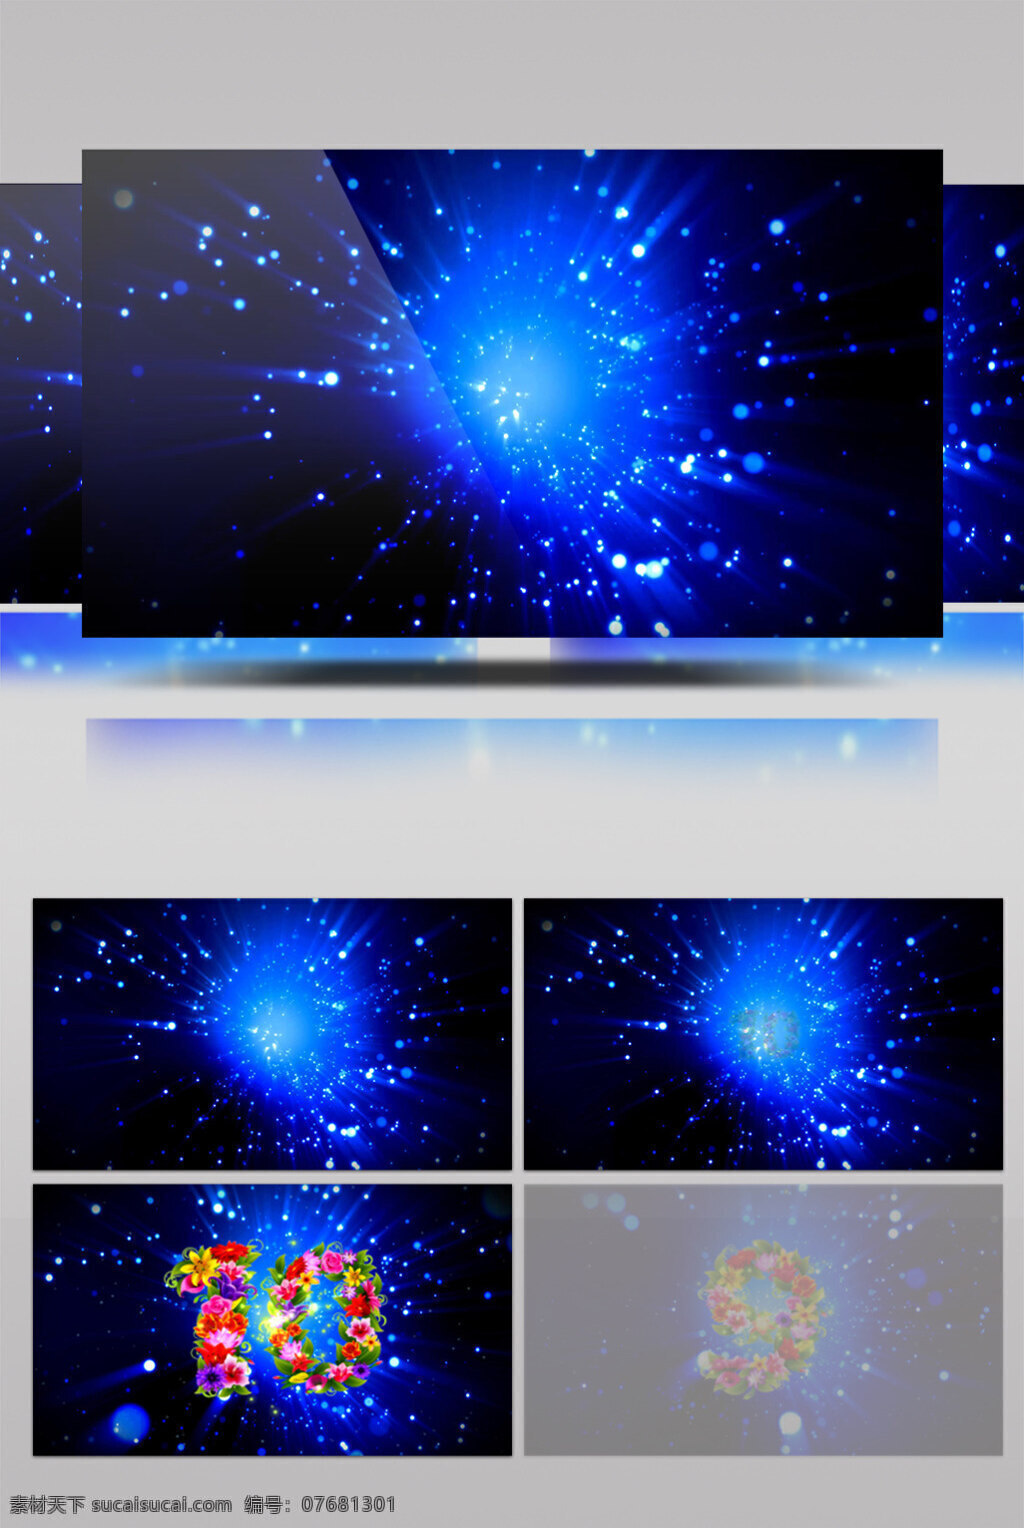 蓝色 心 云 视频 星系银河 蓝色光芒 星空背景 浩瀚宇宙 动态星光 华丽流转 光芒四射 3d视频素材